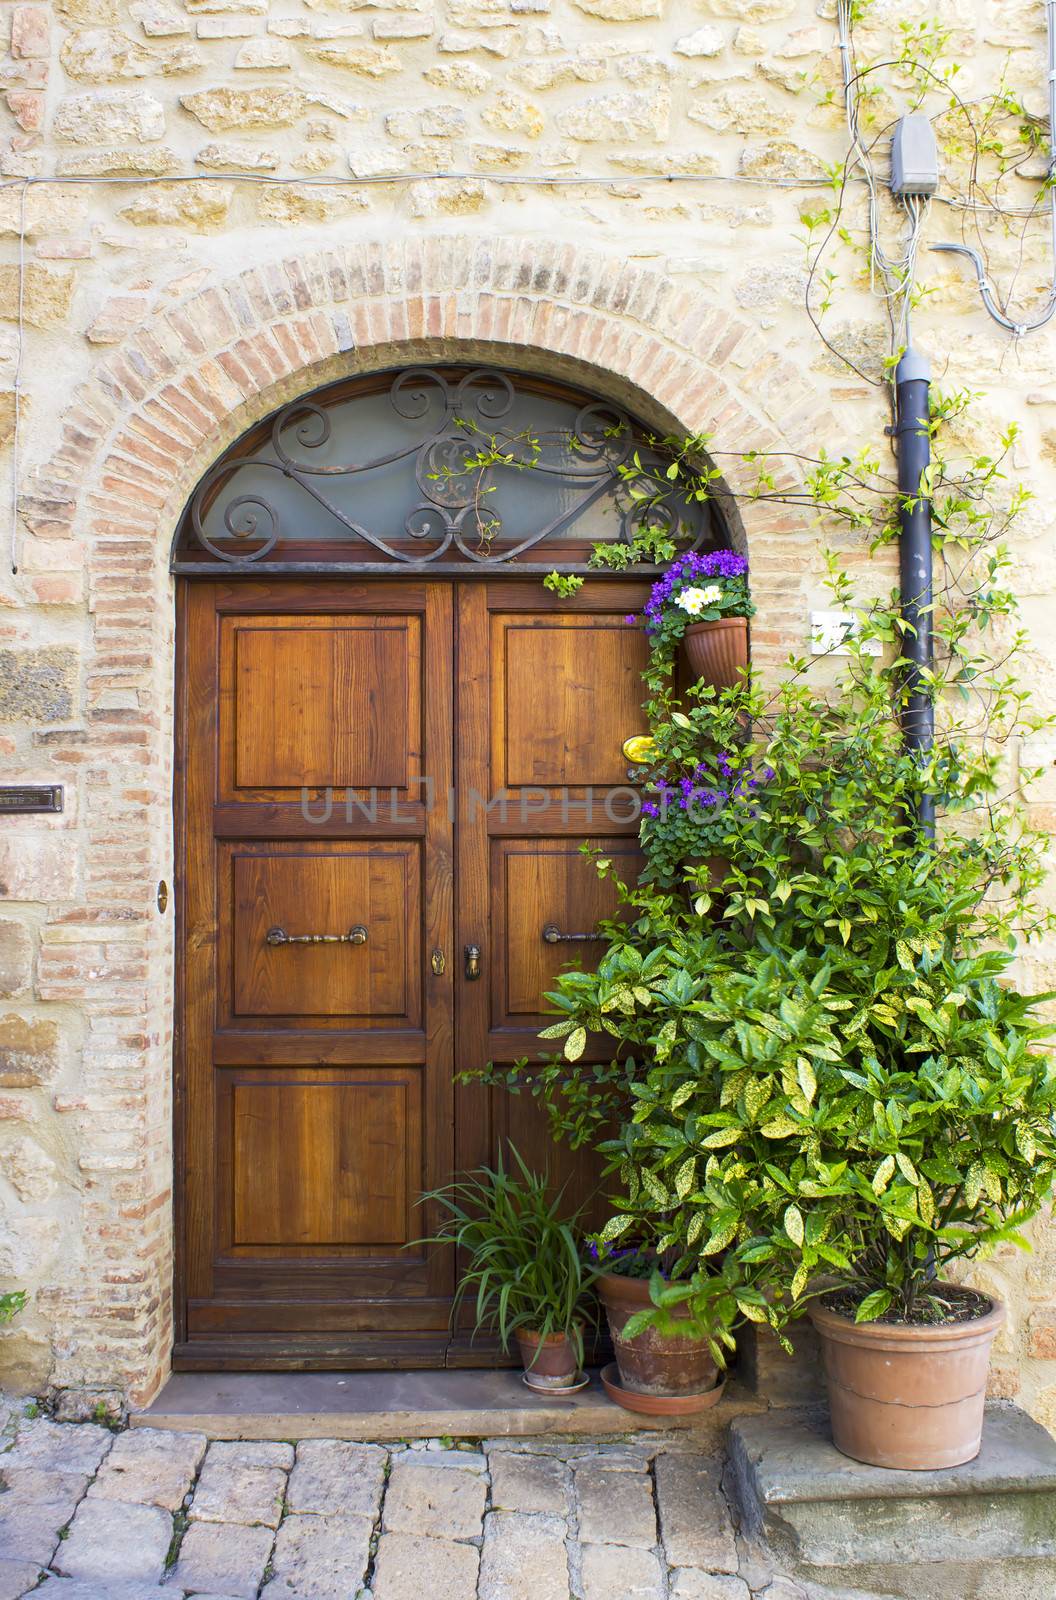 lovely tuscan doors, Volterra, Italy by miradrozdowski